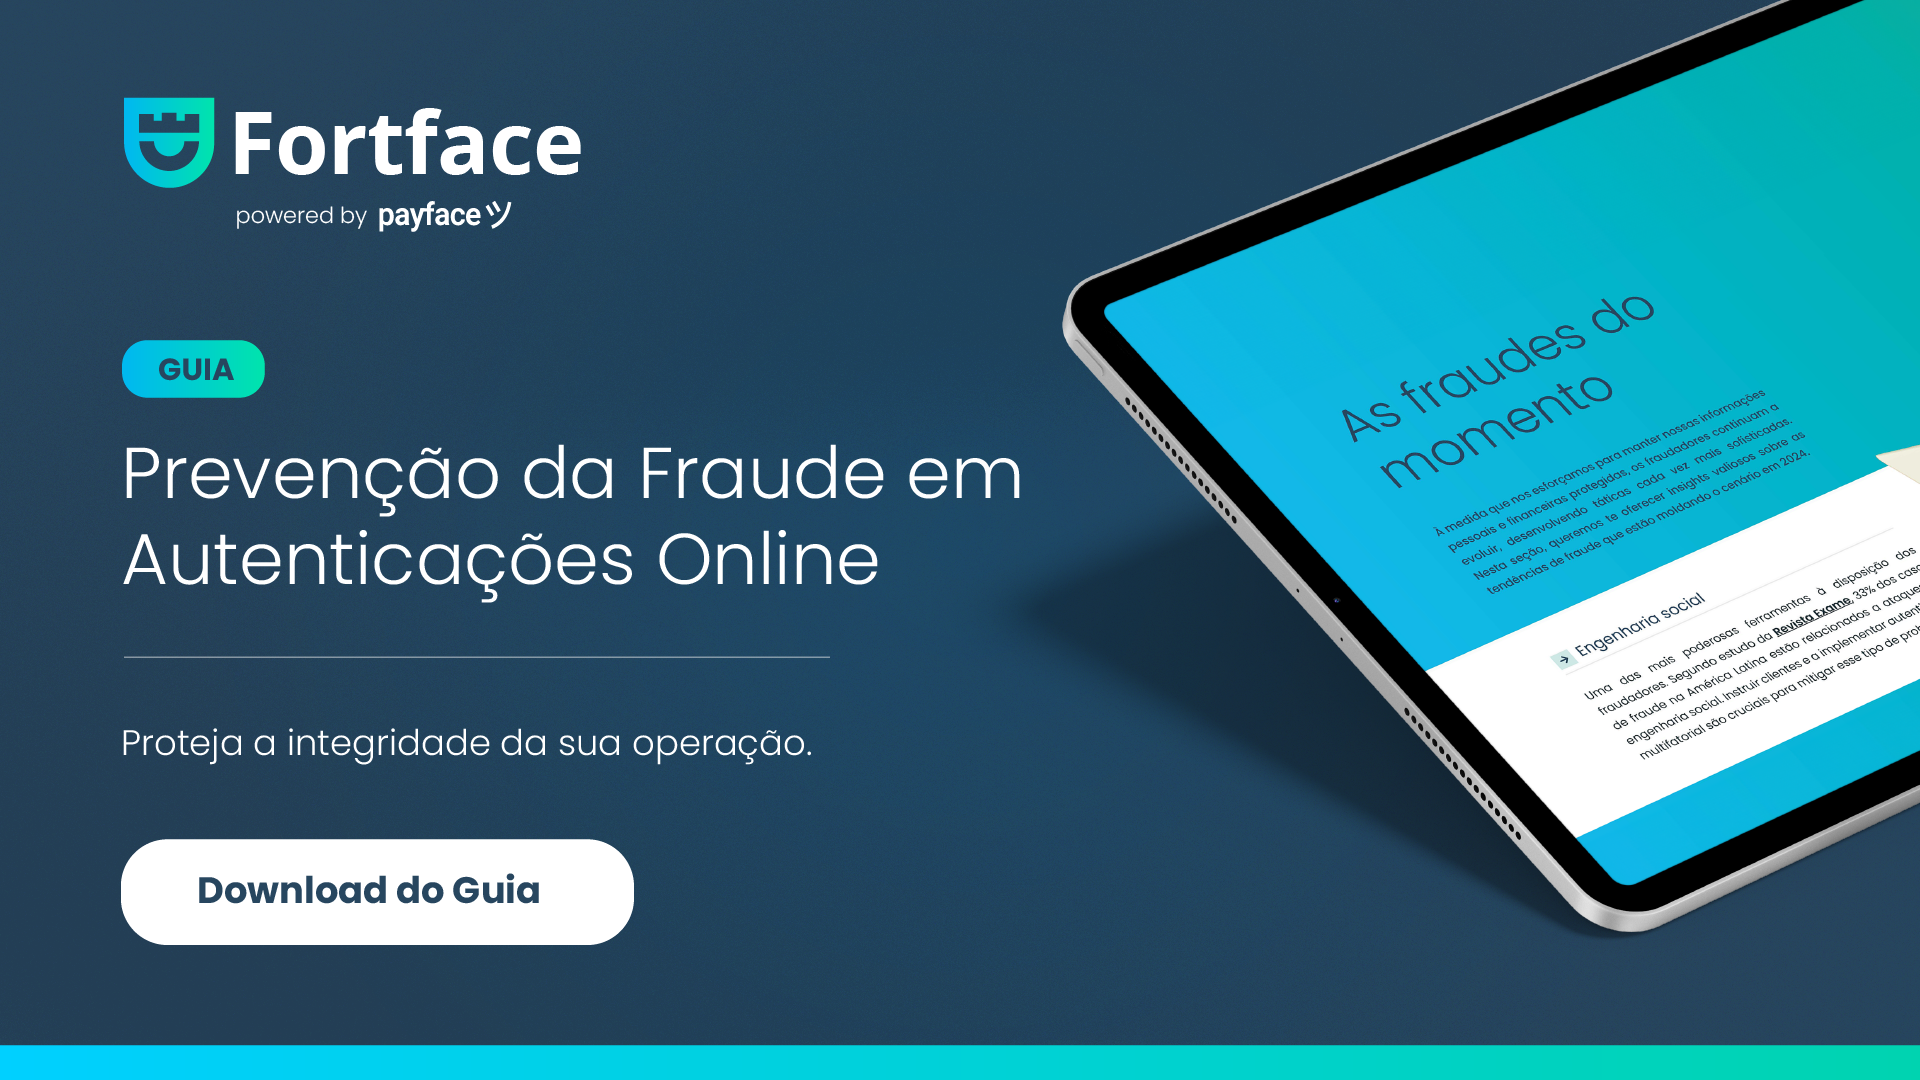 Guia de prevenção da fraude em autenticações online com reconhecimento facial